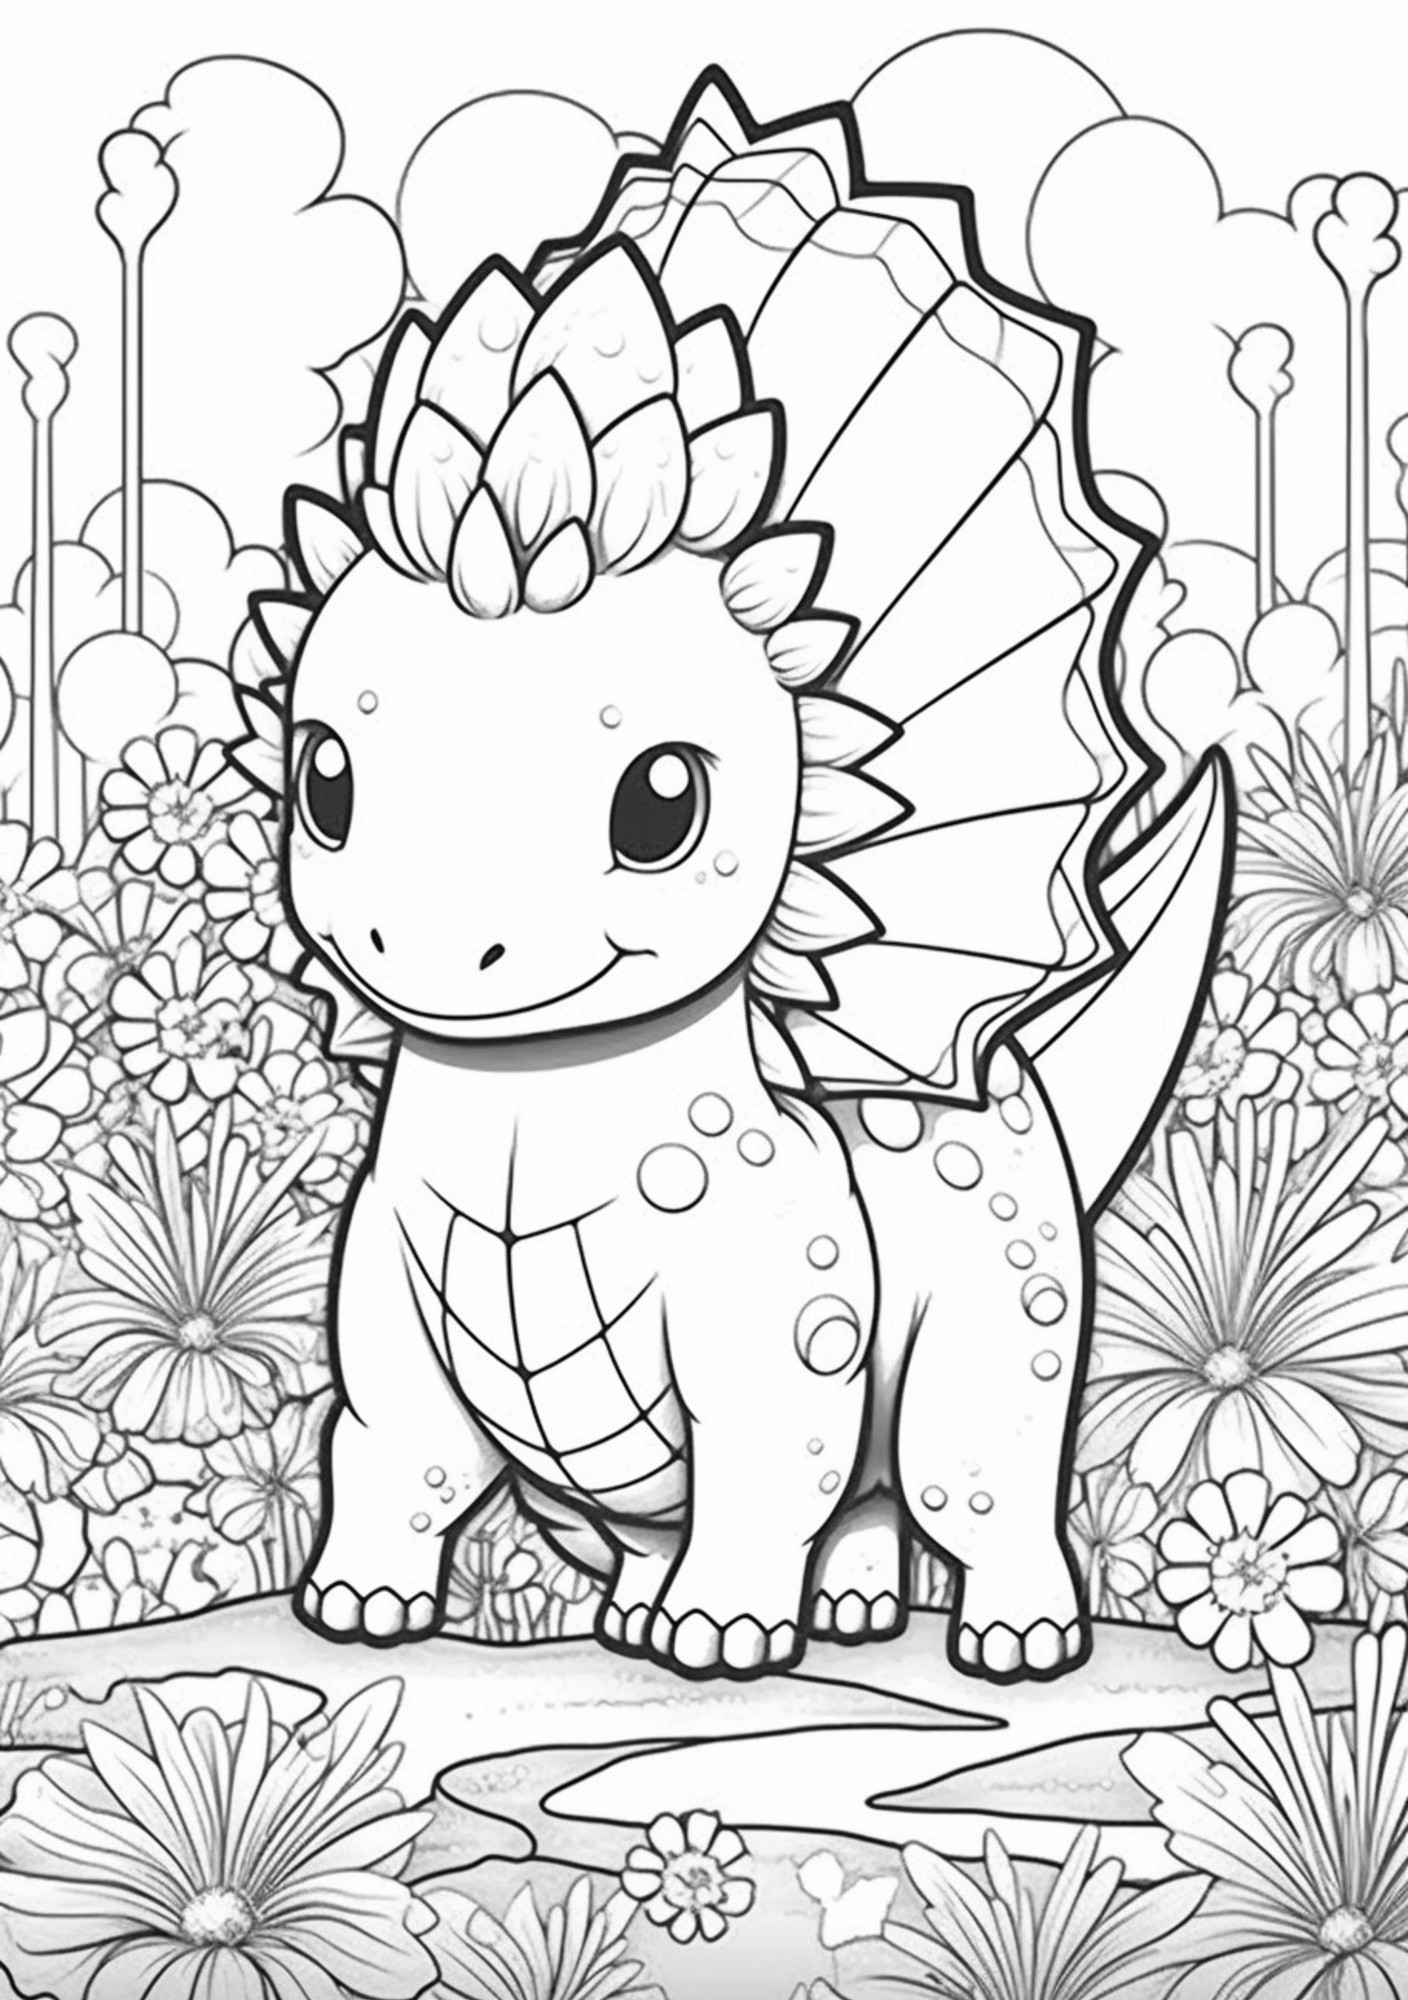 Раскраска для детей: маленький динозавр в саду